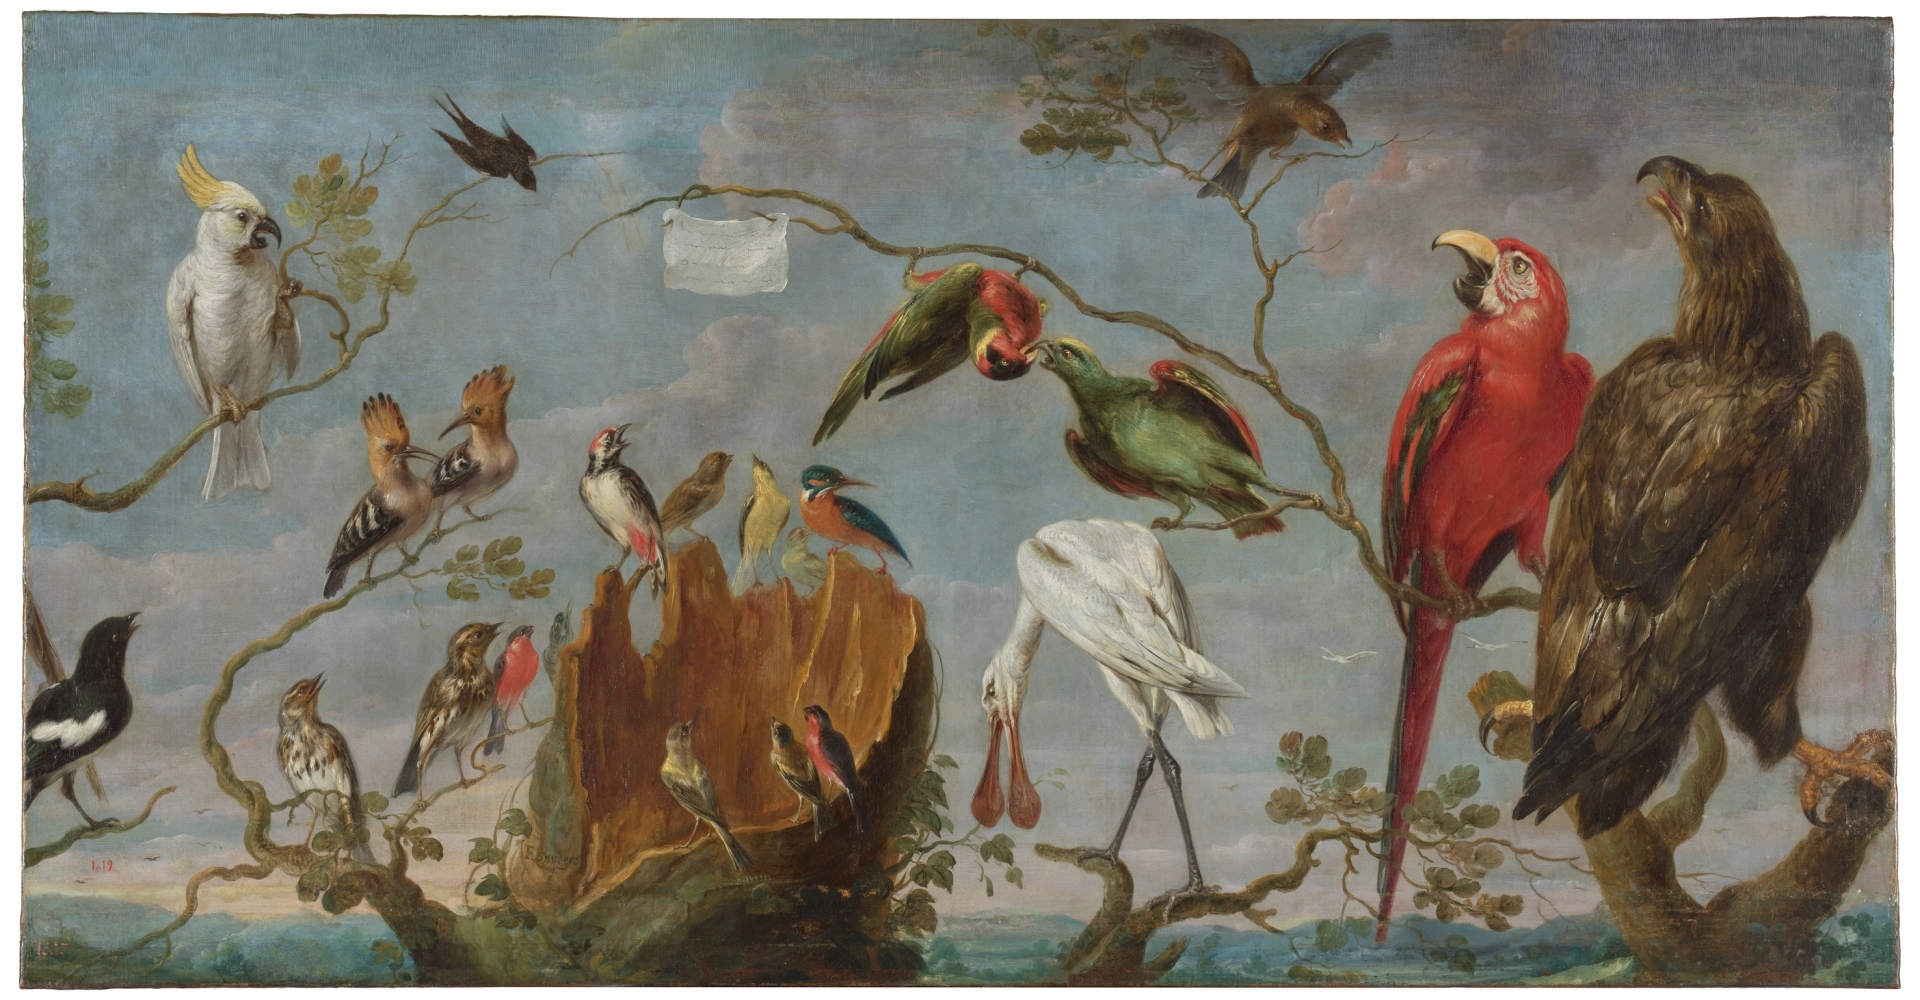 Concert of the Birds - The Collection - Museo Nacional del Prado